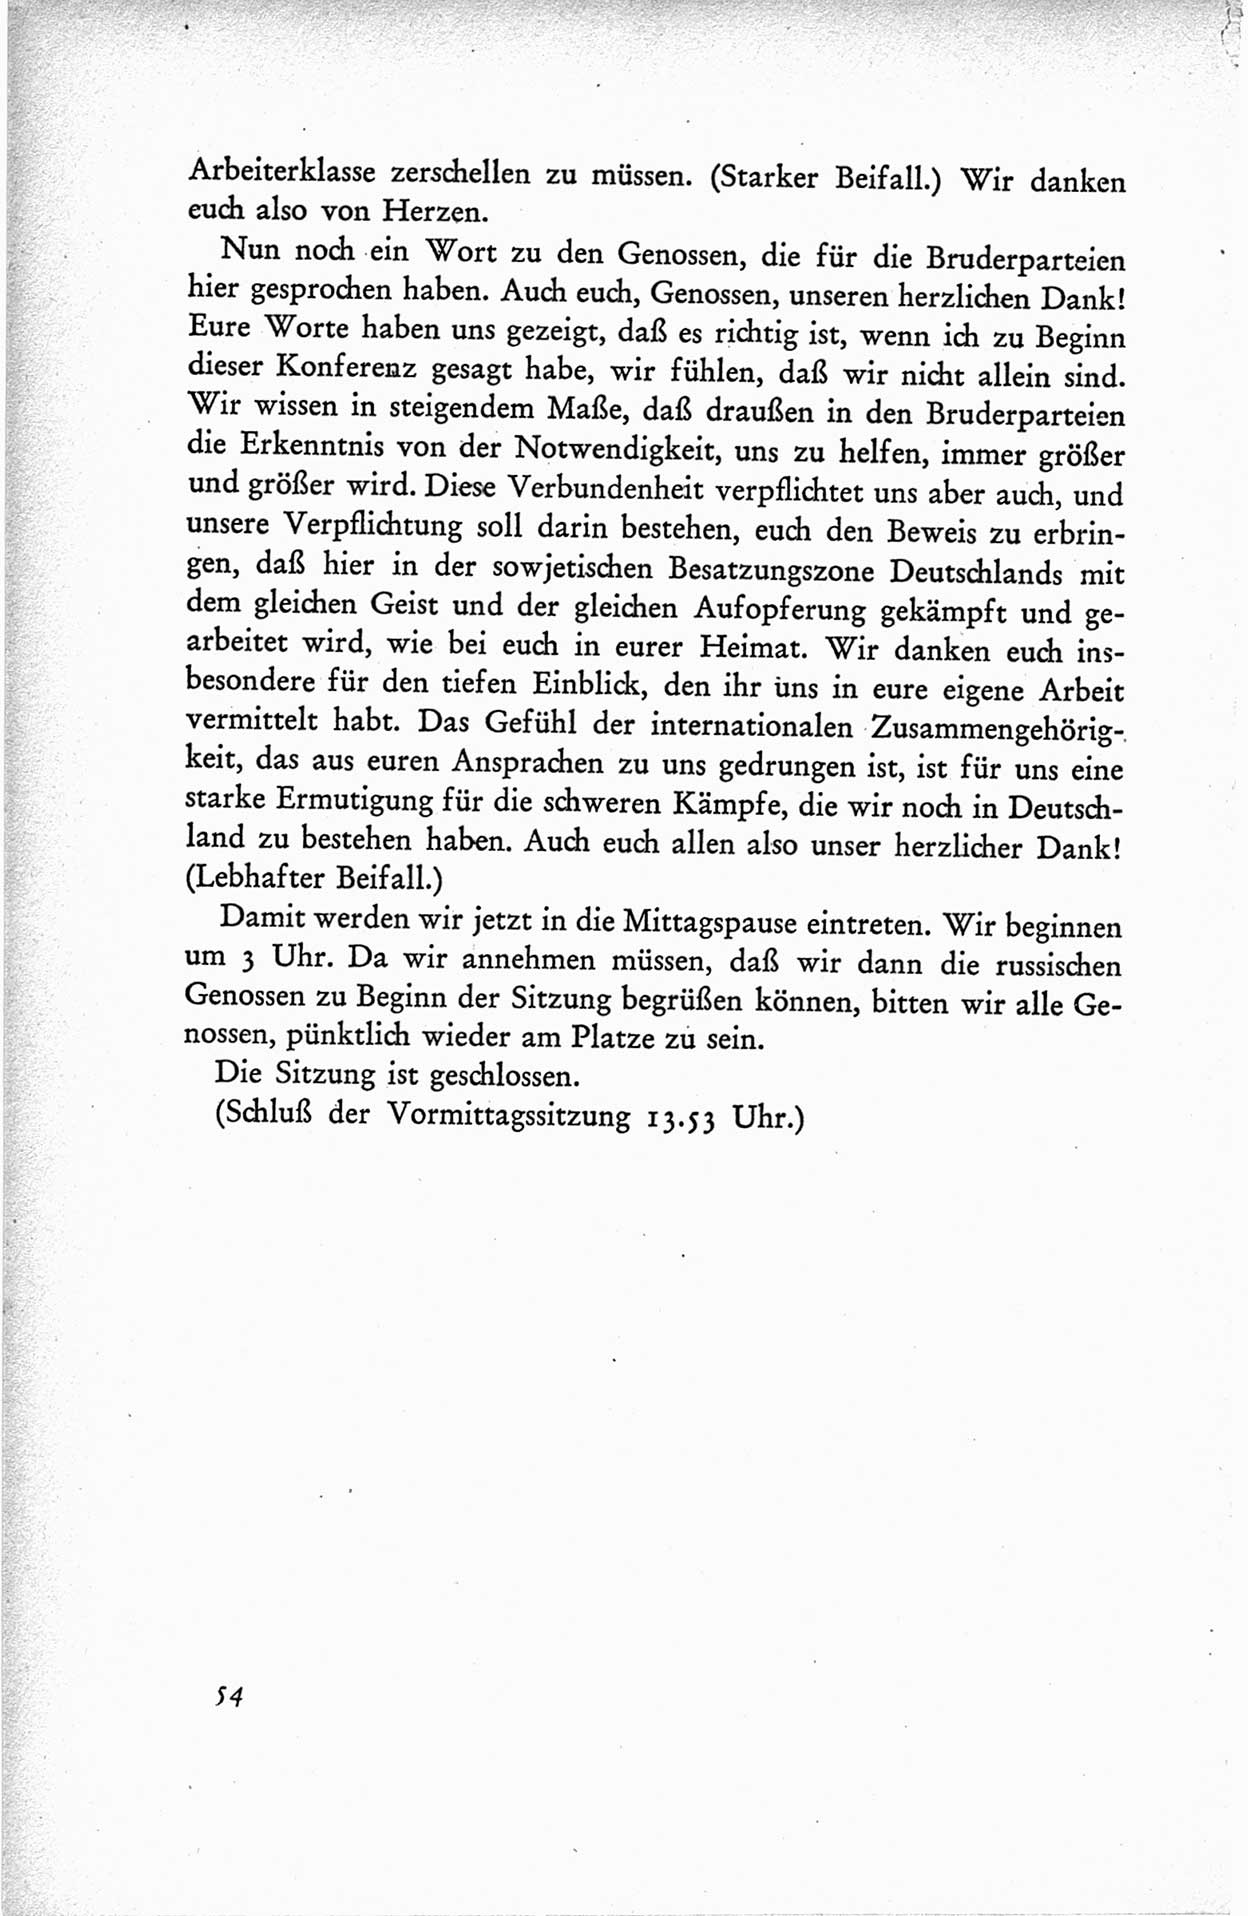 Protokoll der ersten Parteikonferenz der Sozialistischen Einheitspartei Deutschlands (SED) [Sowjetische Besatzungszone (SBZ) Deutschlands] vom 25. bis 28. Januar 1949 im Hause der Deutschen Wirtschaftskommission zu Berlin, Seite 54 (Prot. 1. PK SED SBZ Dtl. 1949, S. 54)